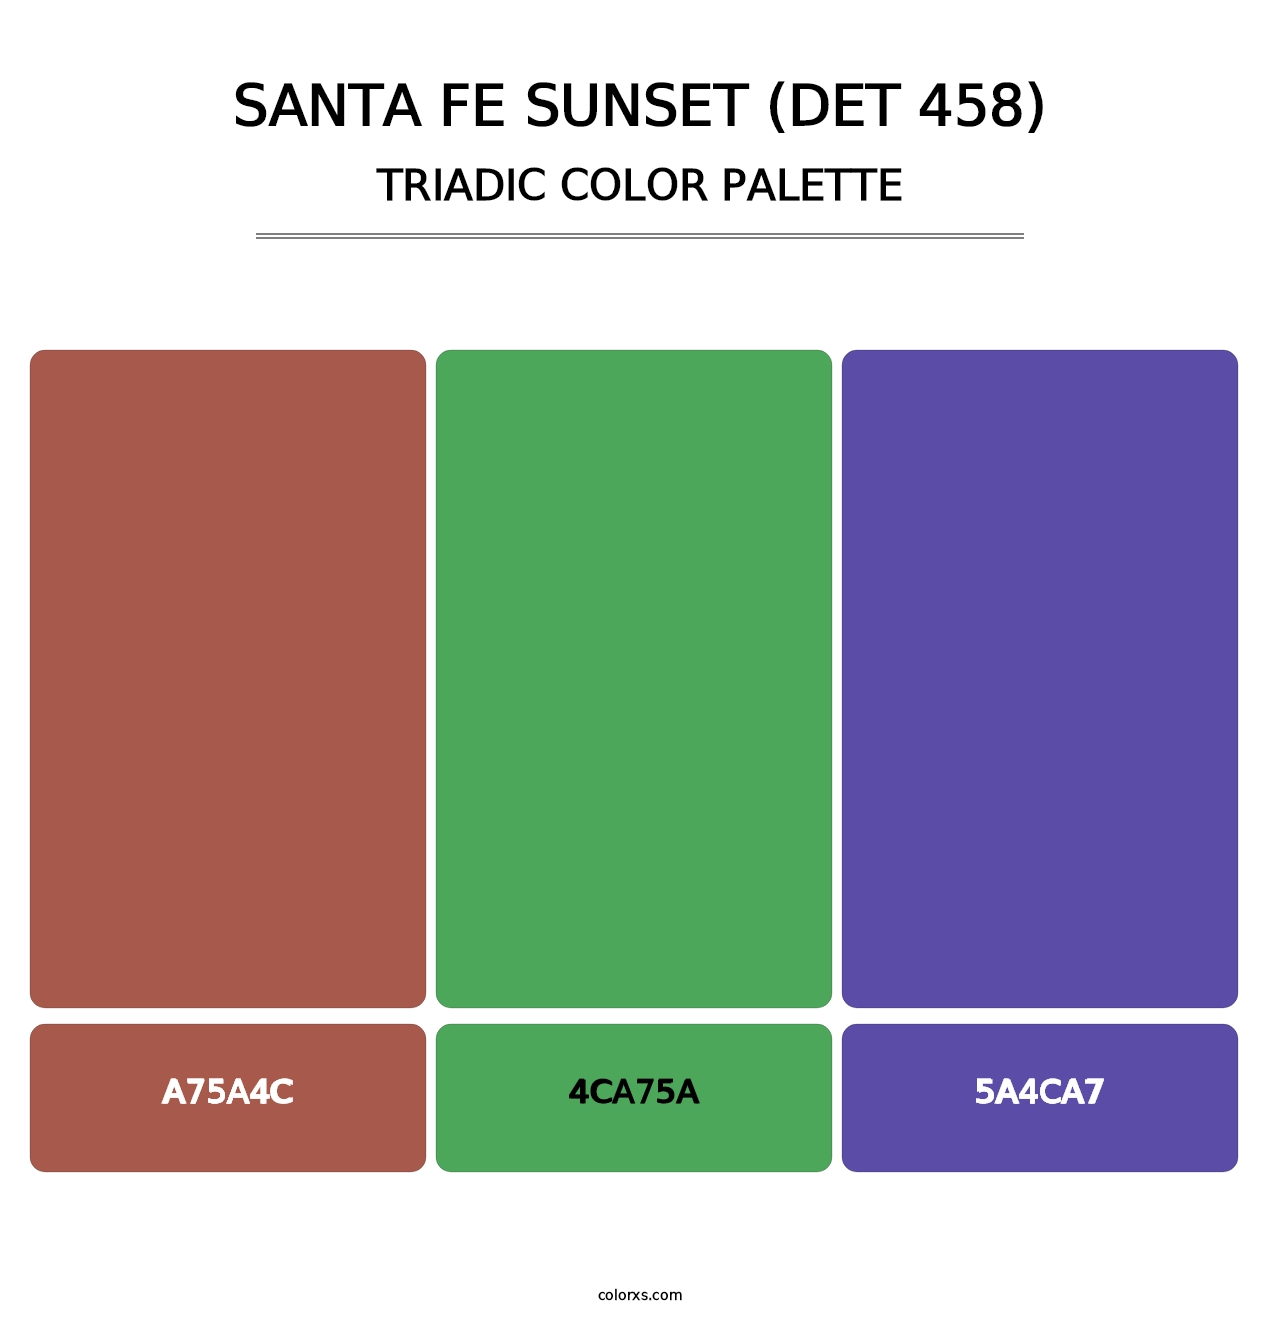 Santa Fe Sunset (DET 458) - Triadic Color Palette